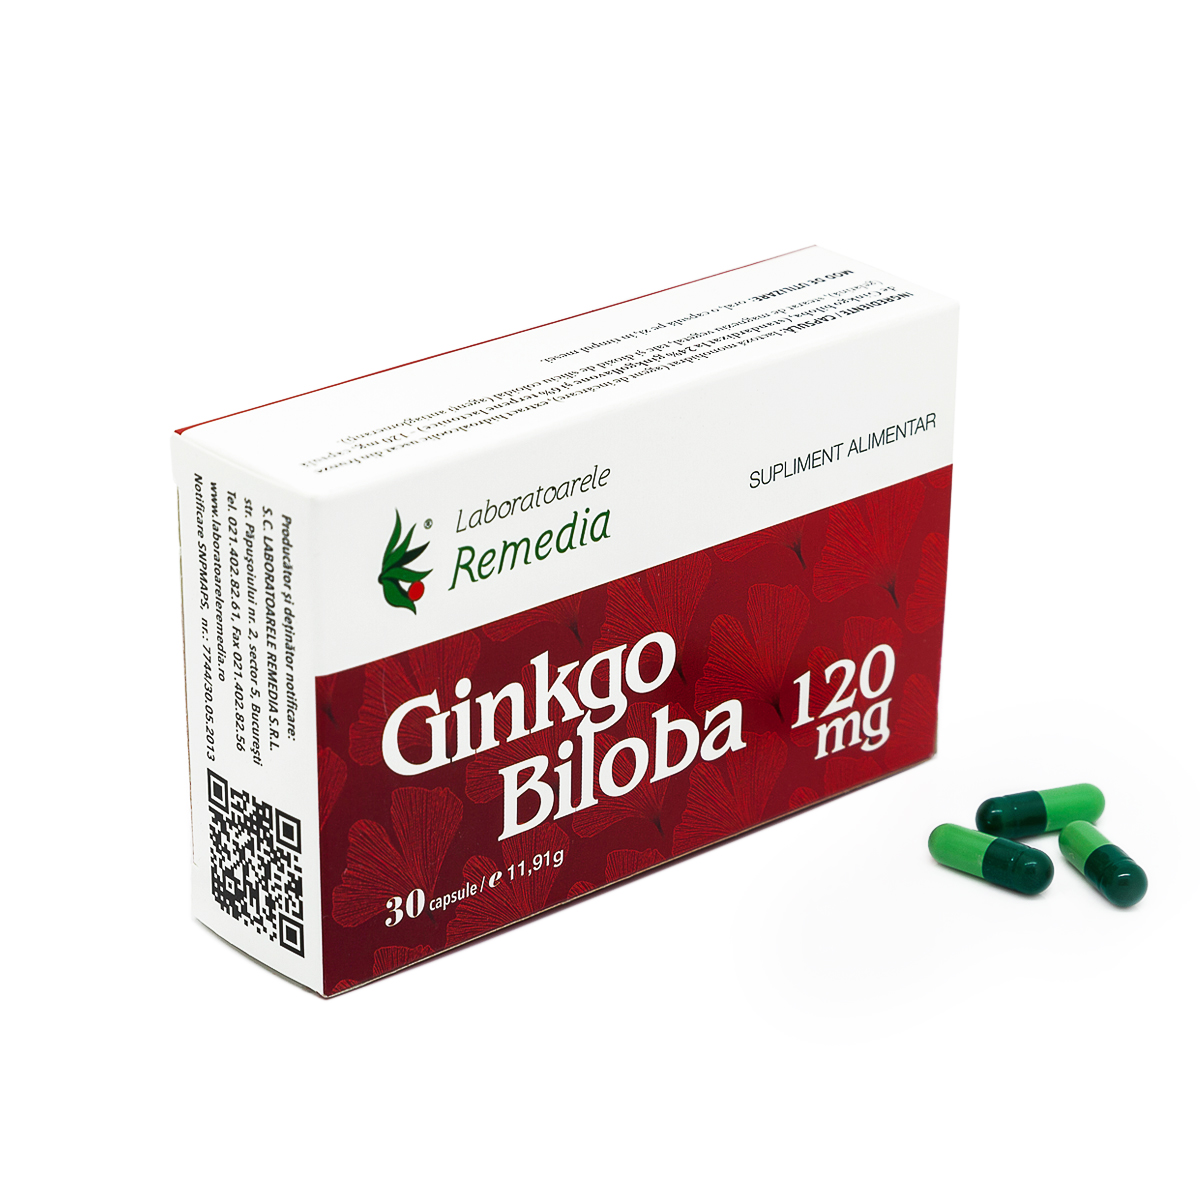 Memorie și concentrare - Ginkgo Biloba 120 mg, 30 capsule, Remedia, farmaciamare.ro